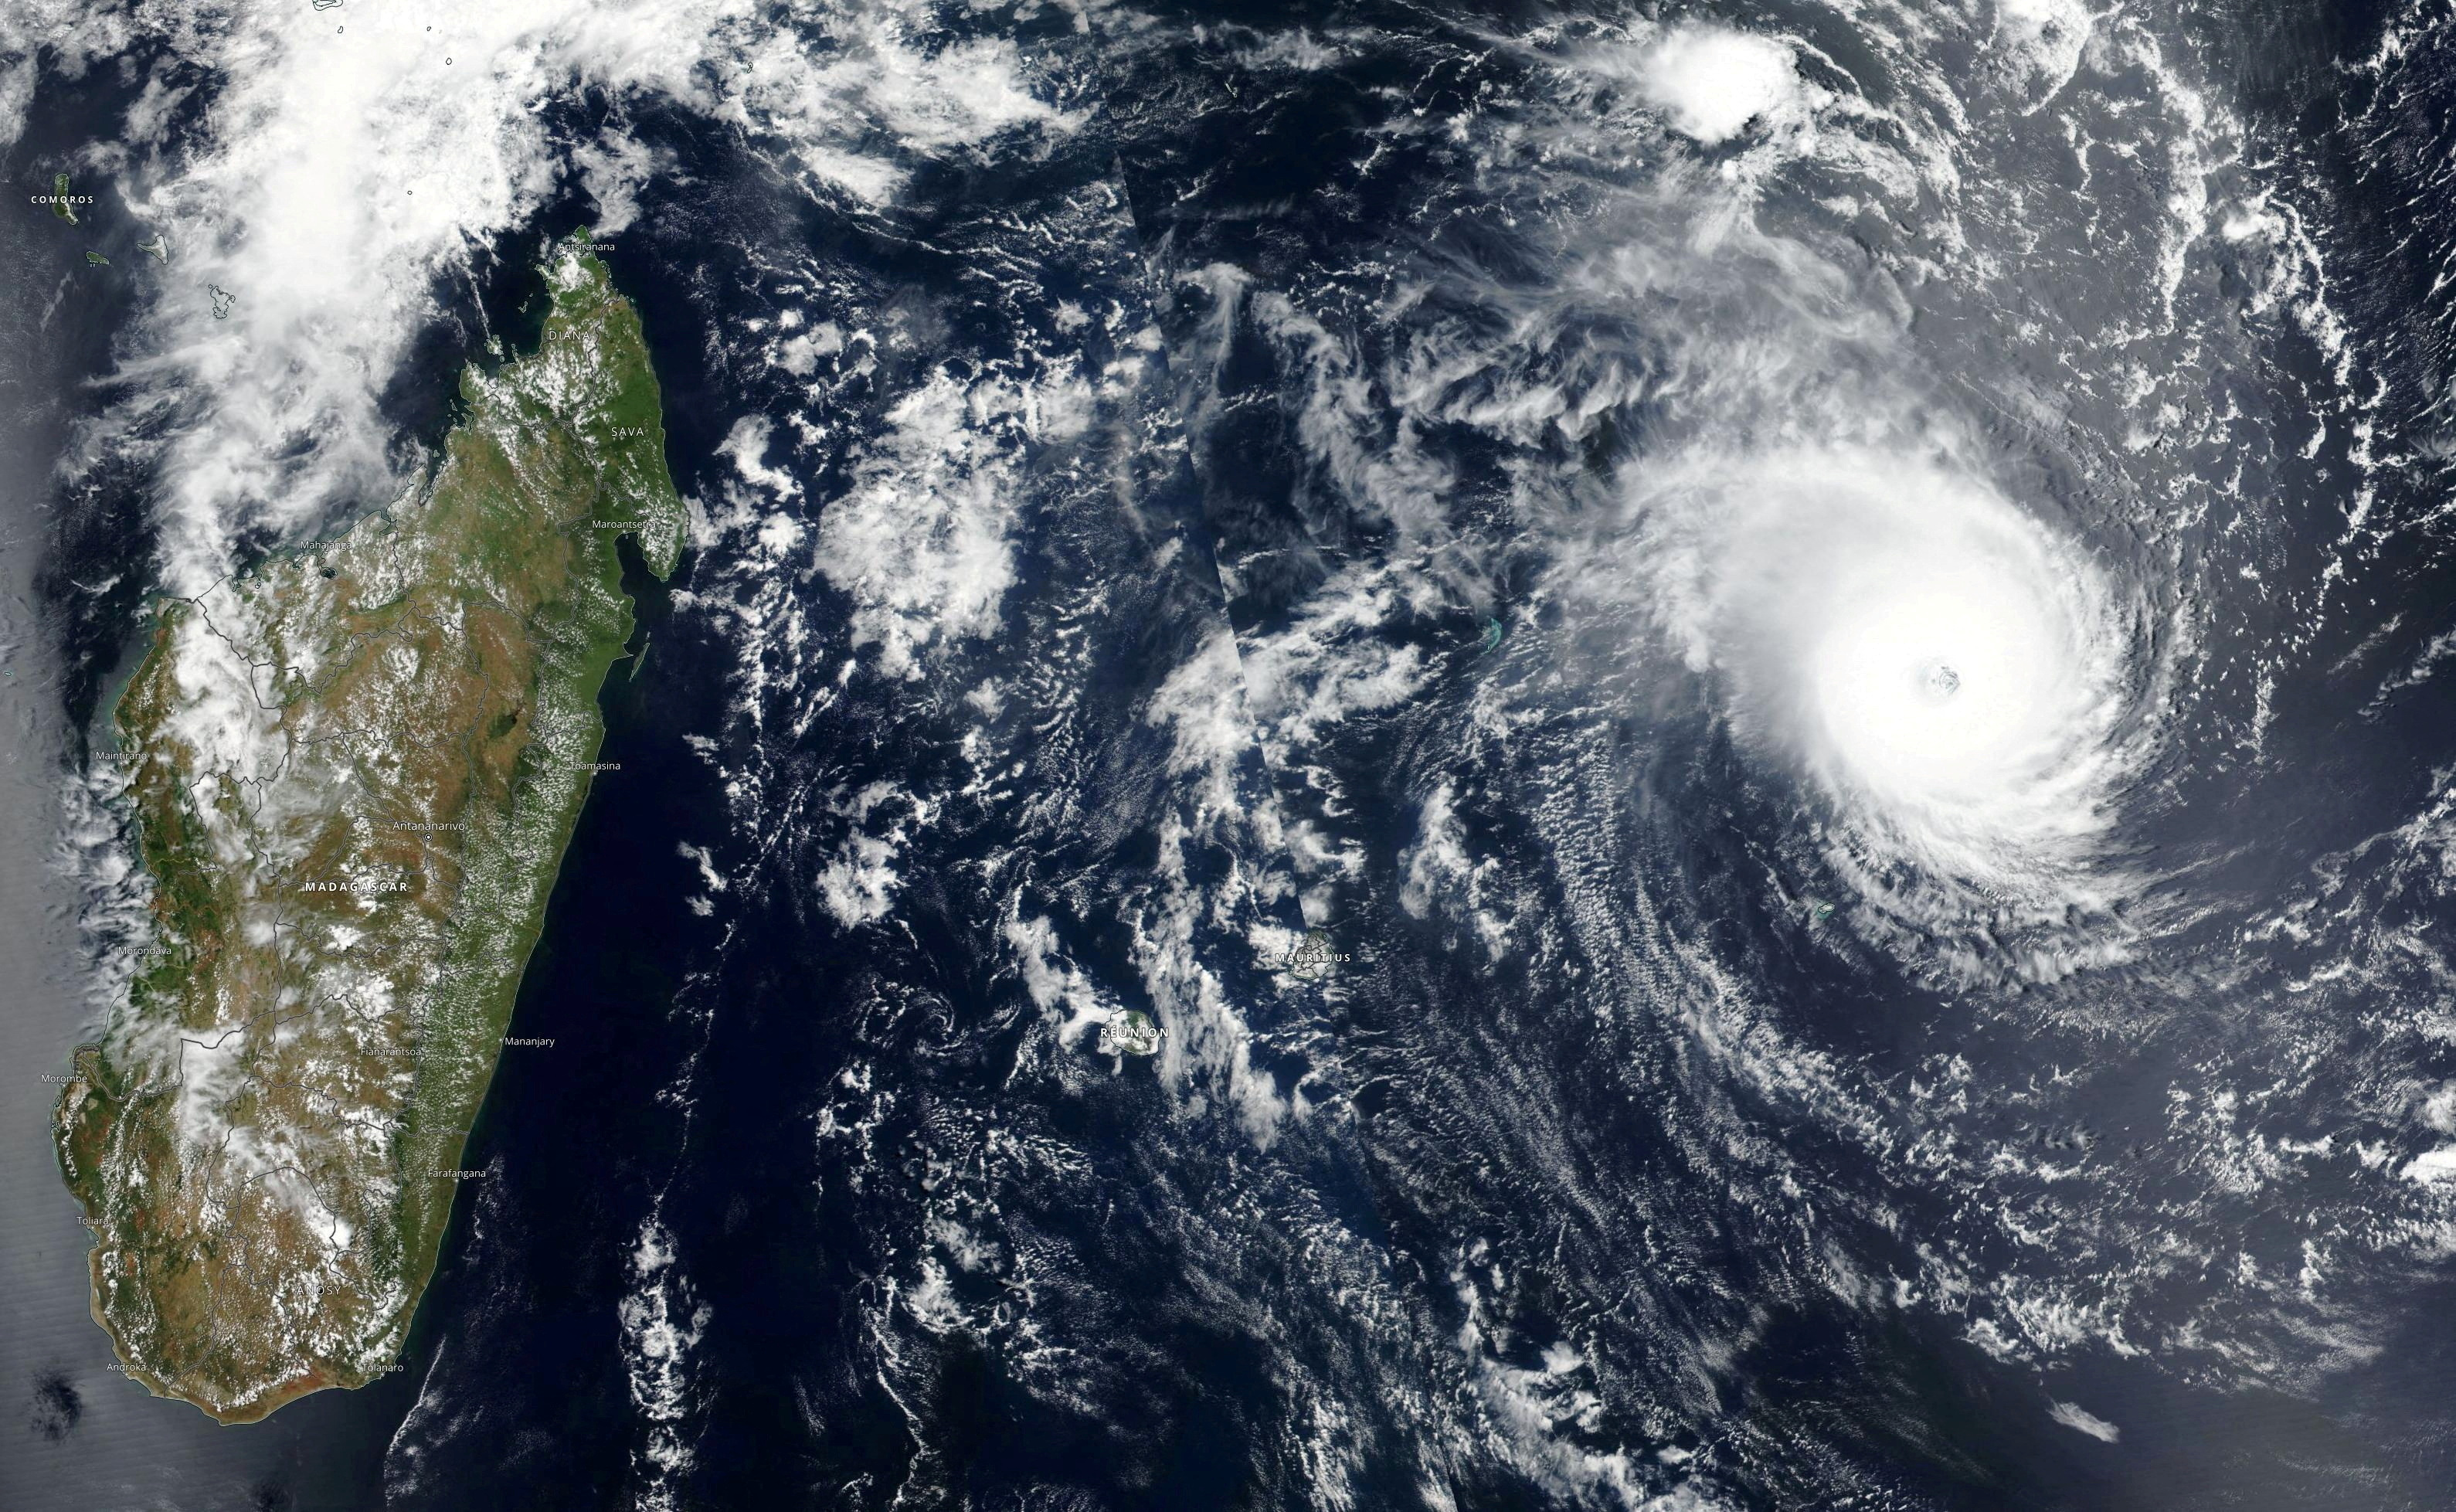 FOTO DE ARCHIVO: Las imágenes satelitales muestran al ciclón tropical Freddy acercándose a Madagascar en esta imagen satelital sin fecha obtenida el 20 de febrero de 2023. NASA Worldview/Handout vía REUTERS/File Photo
